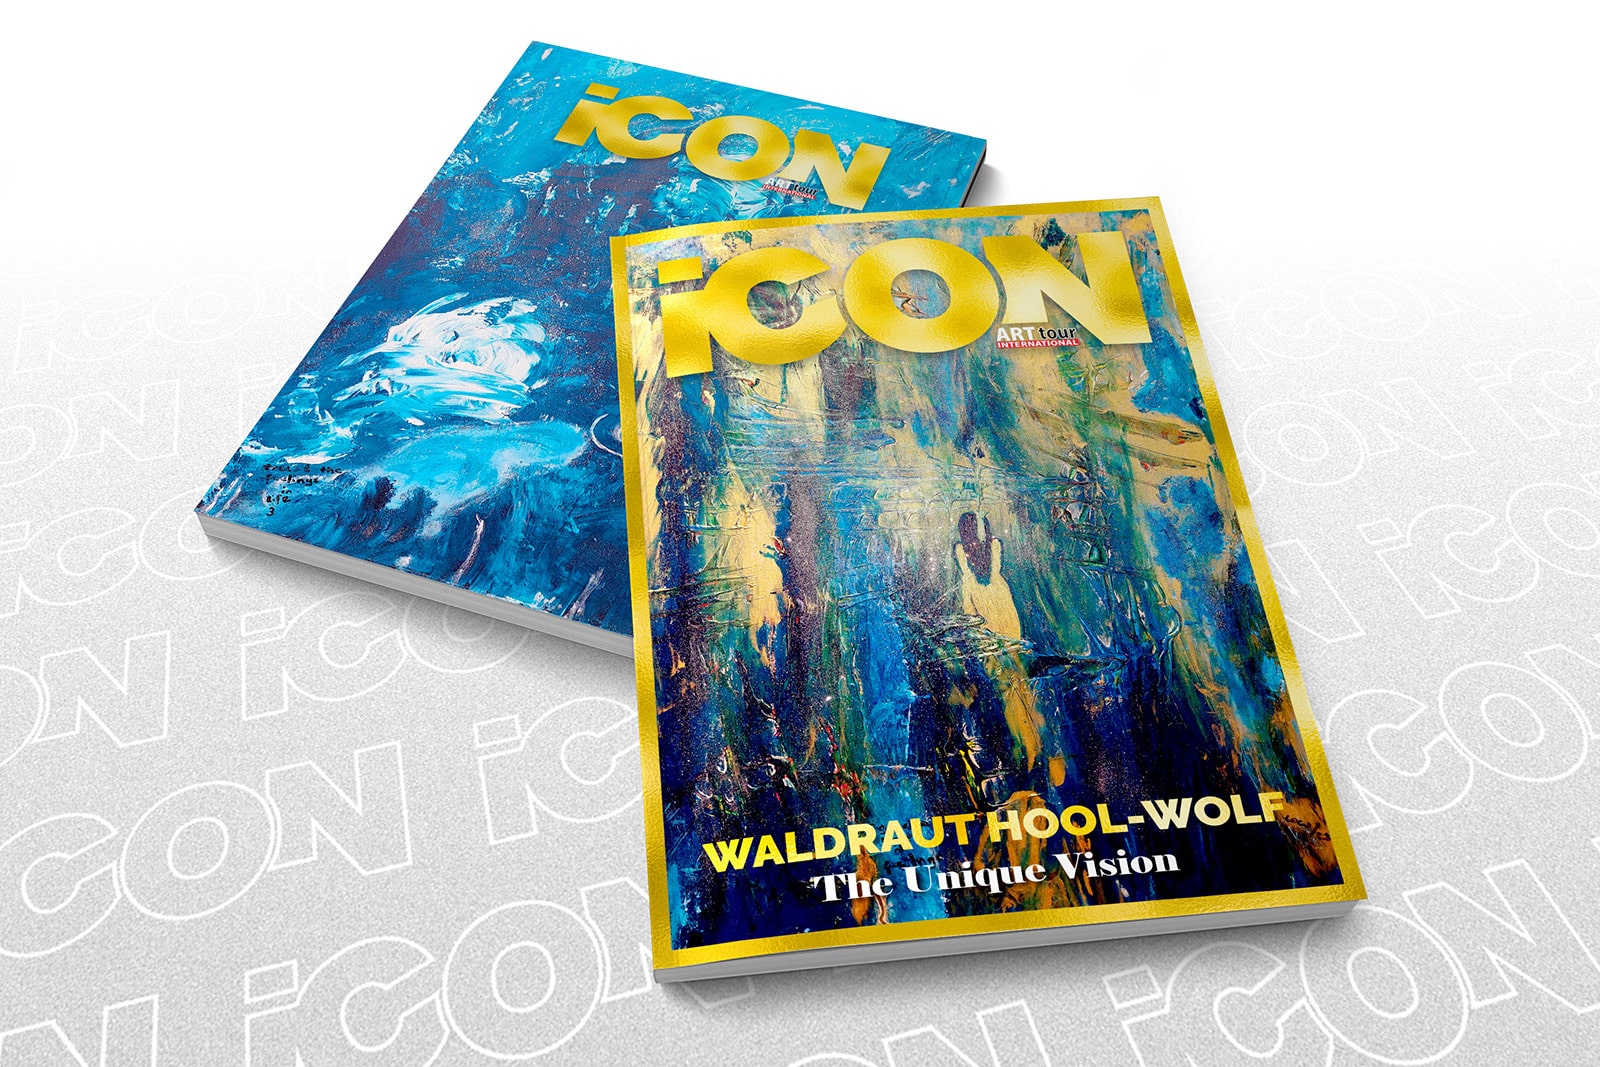 Waldraut Hool-Wolf - ICON by ATIM